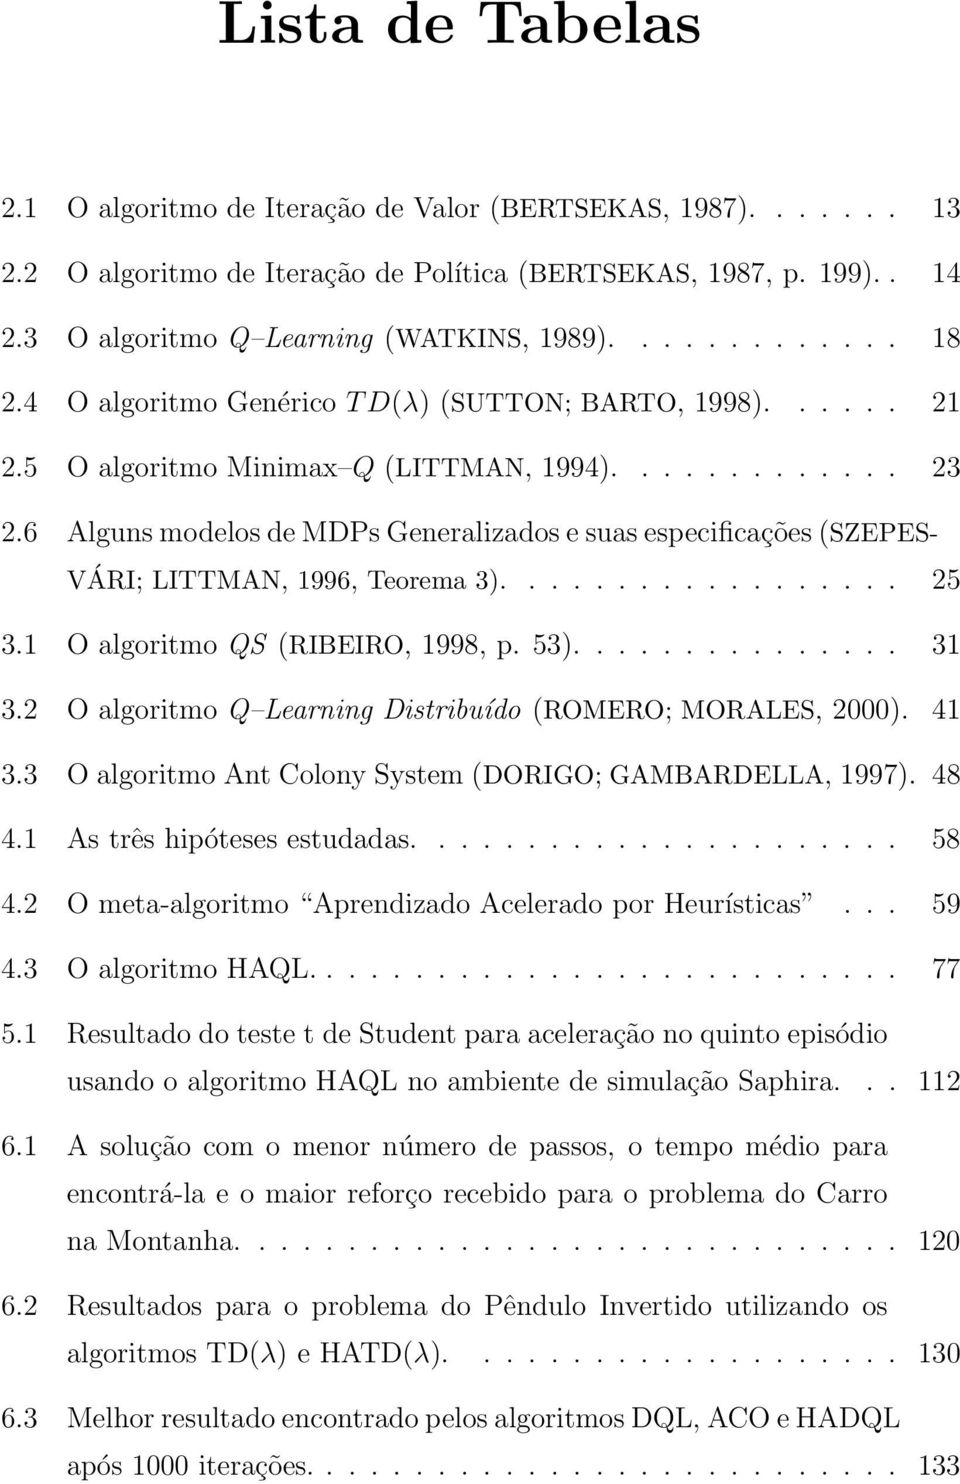 6 Alguns modelos de MDPs Generalizados e suas especificações (SZEPES- VÁRI; LITTMAN, 1996, Teorema 3).................. 25 3.1 O algoritmo QS (RIBEIRO, 1998, p. 53)............... 31 3.